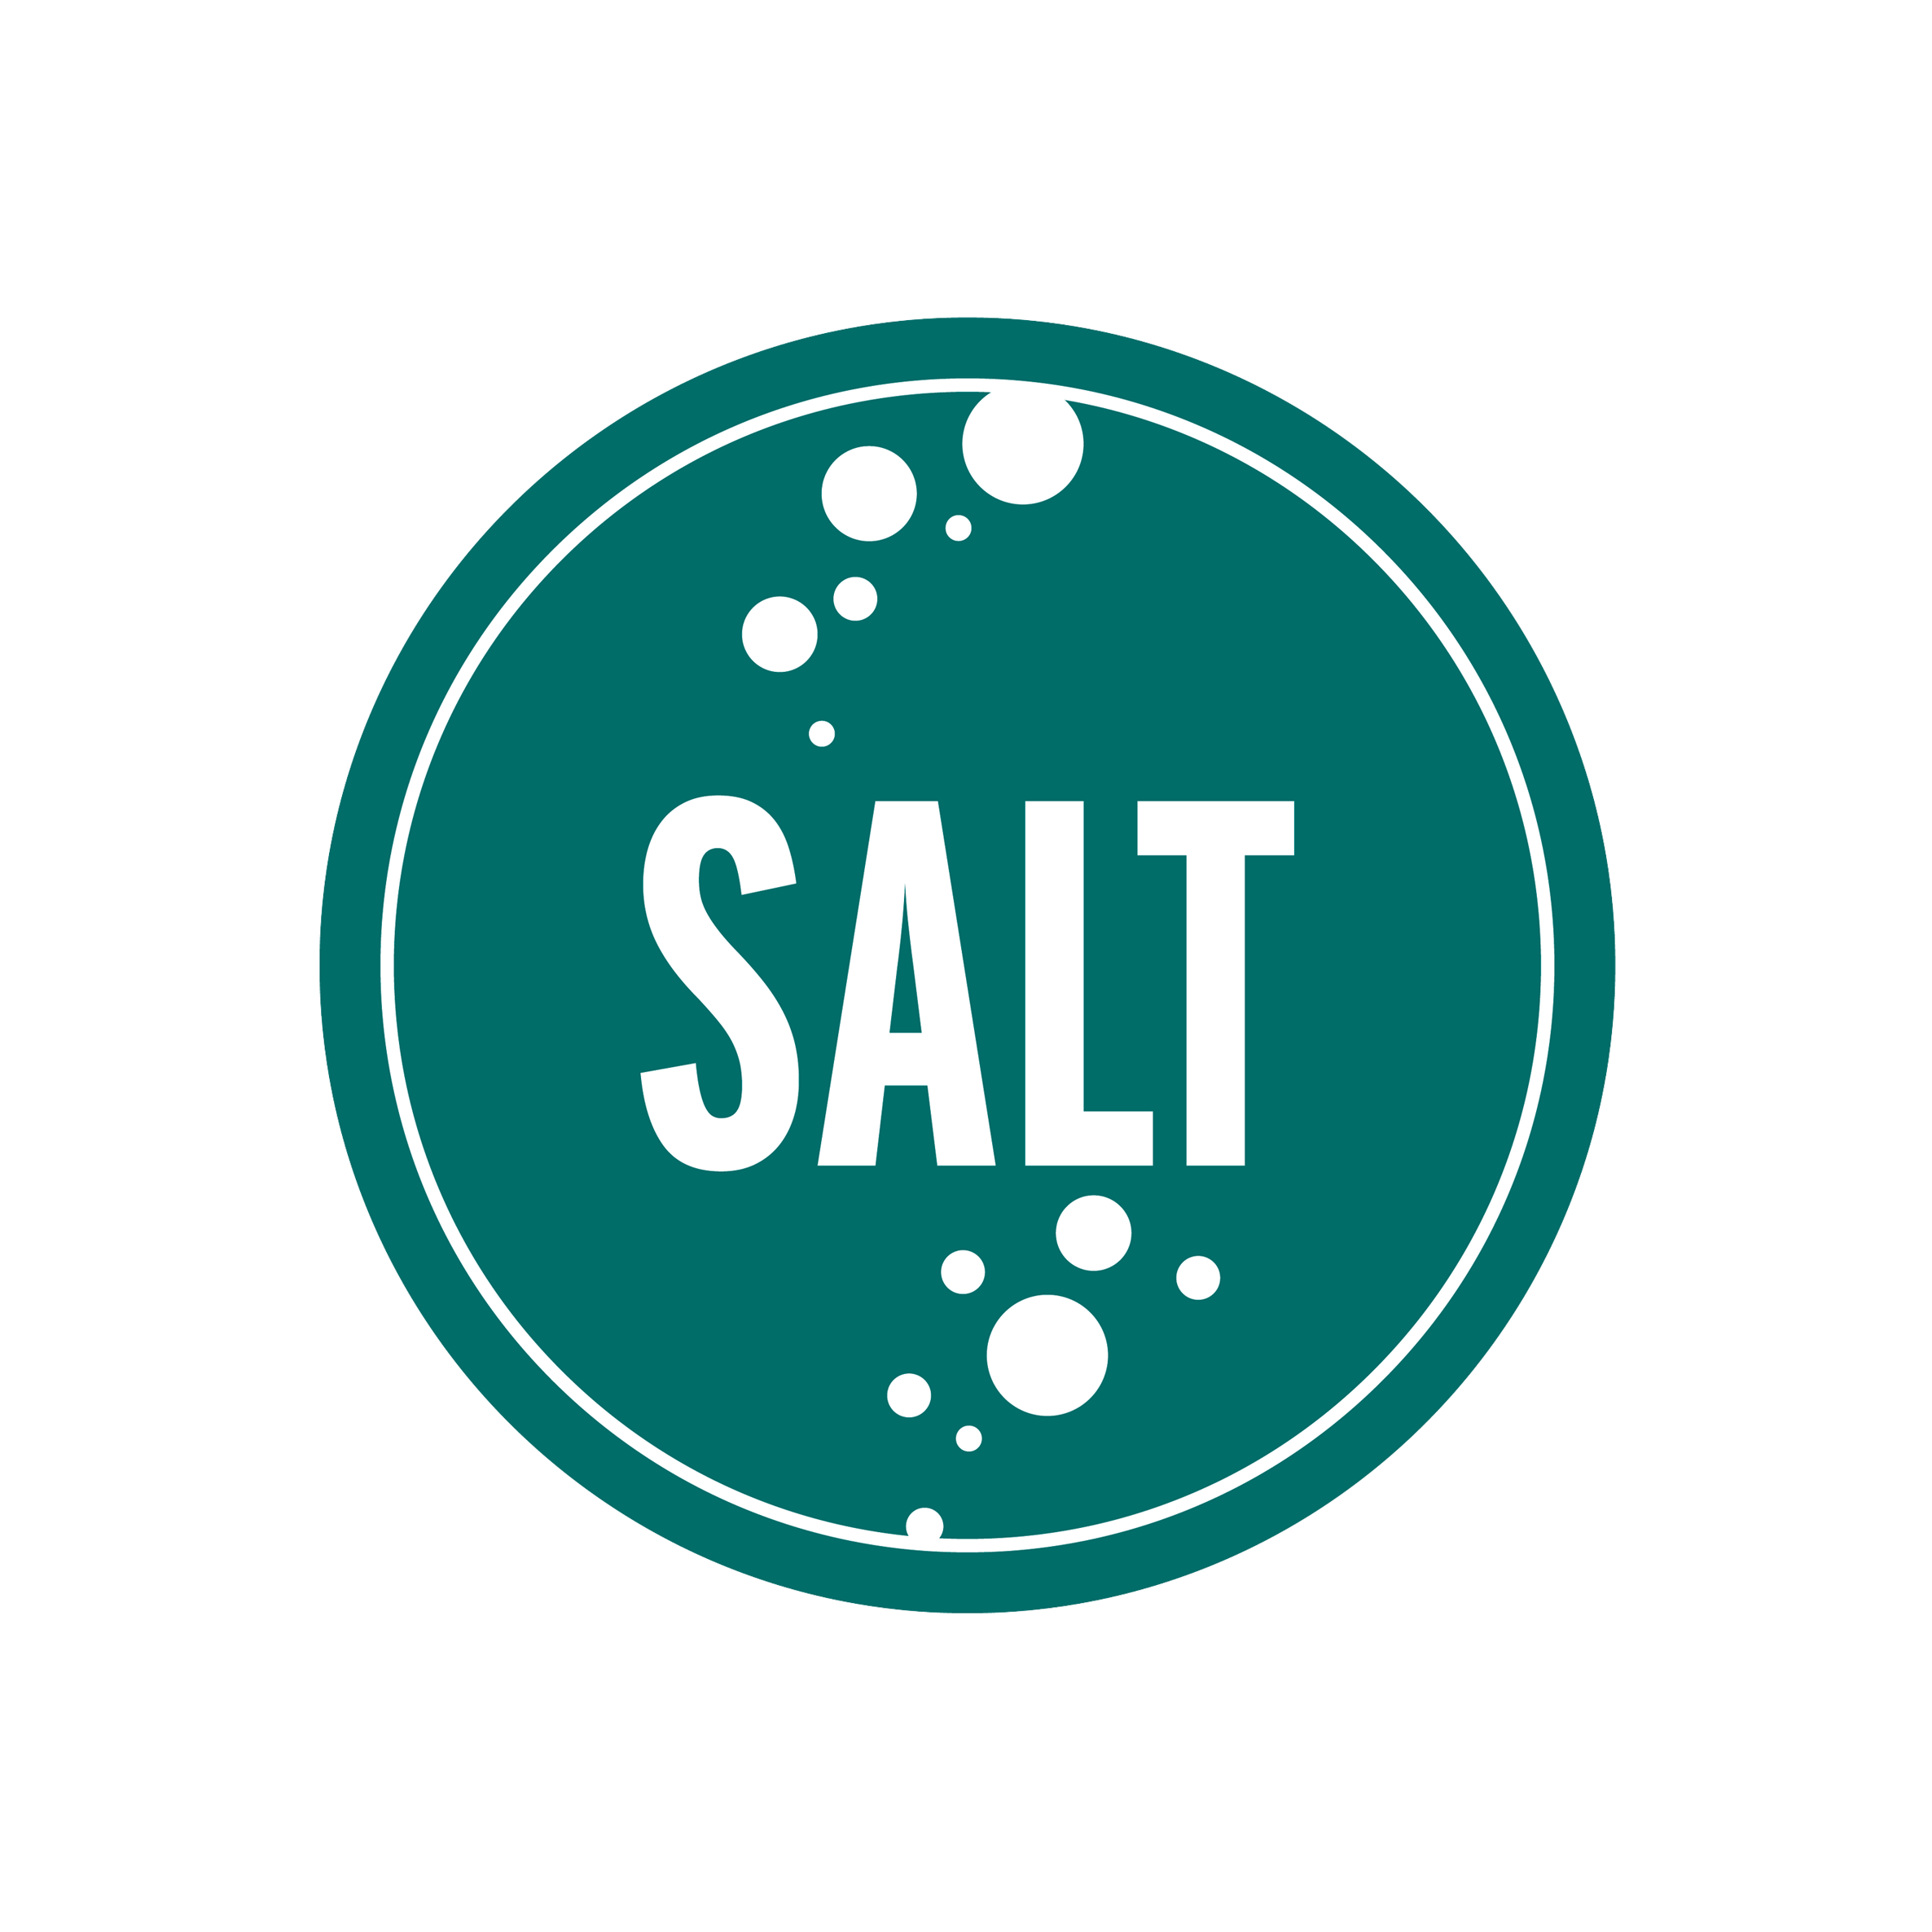 SALT logo